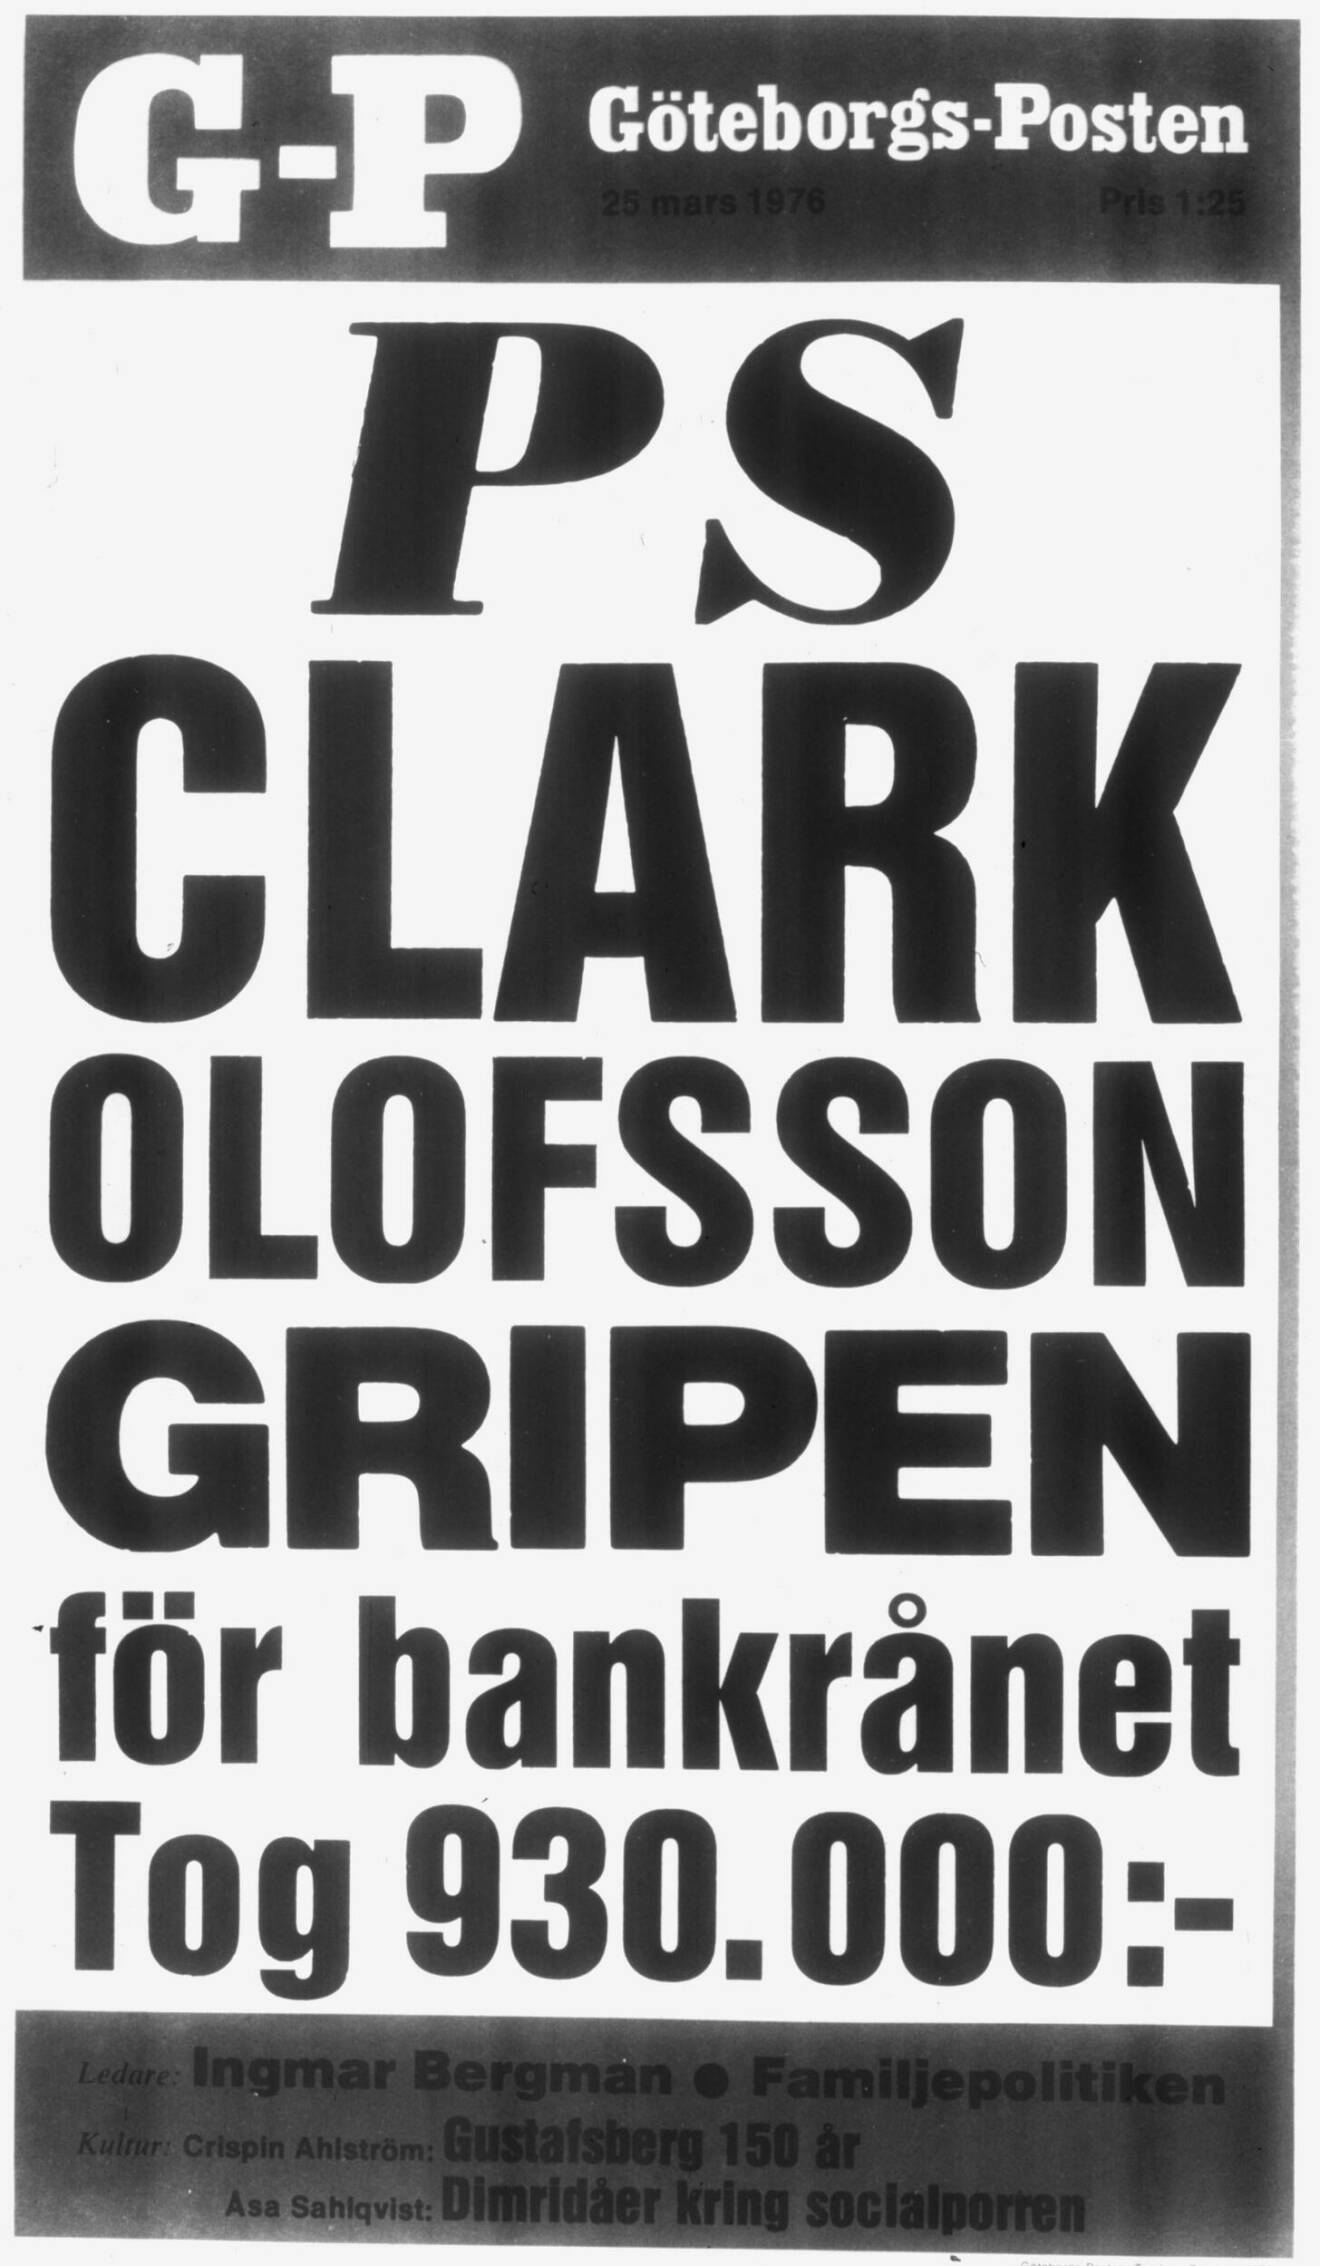 En löpsedel från 1976 med texten Clark Olofsson gripen för bankrånet